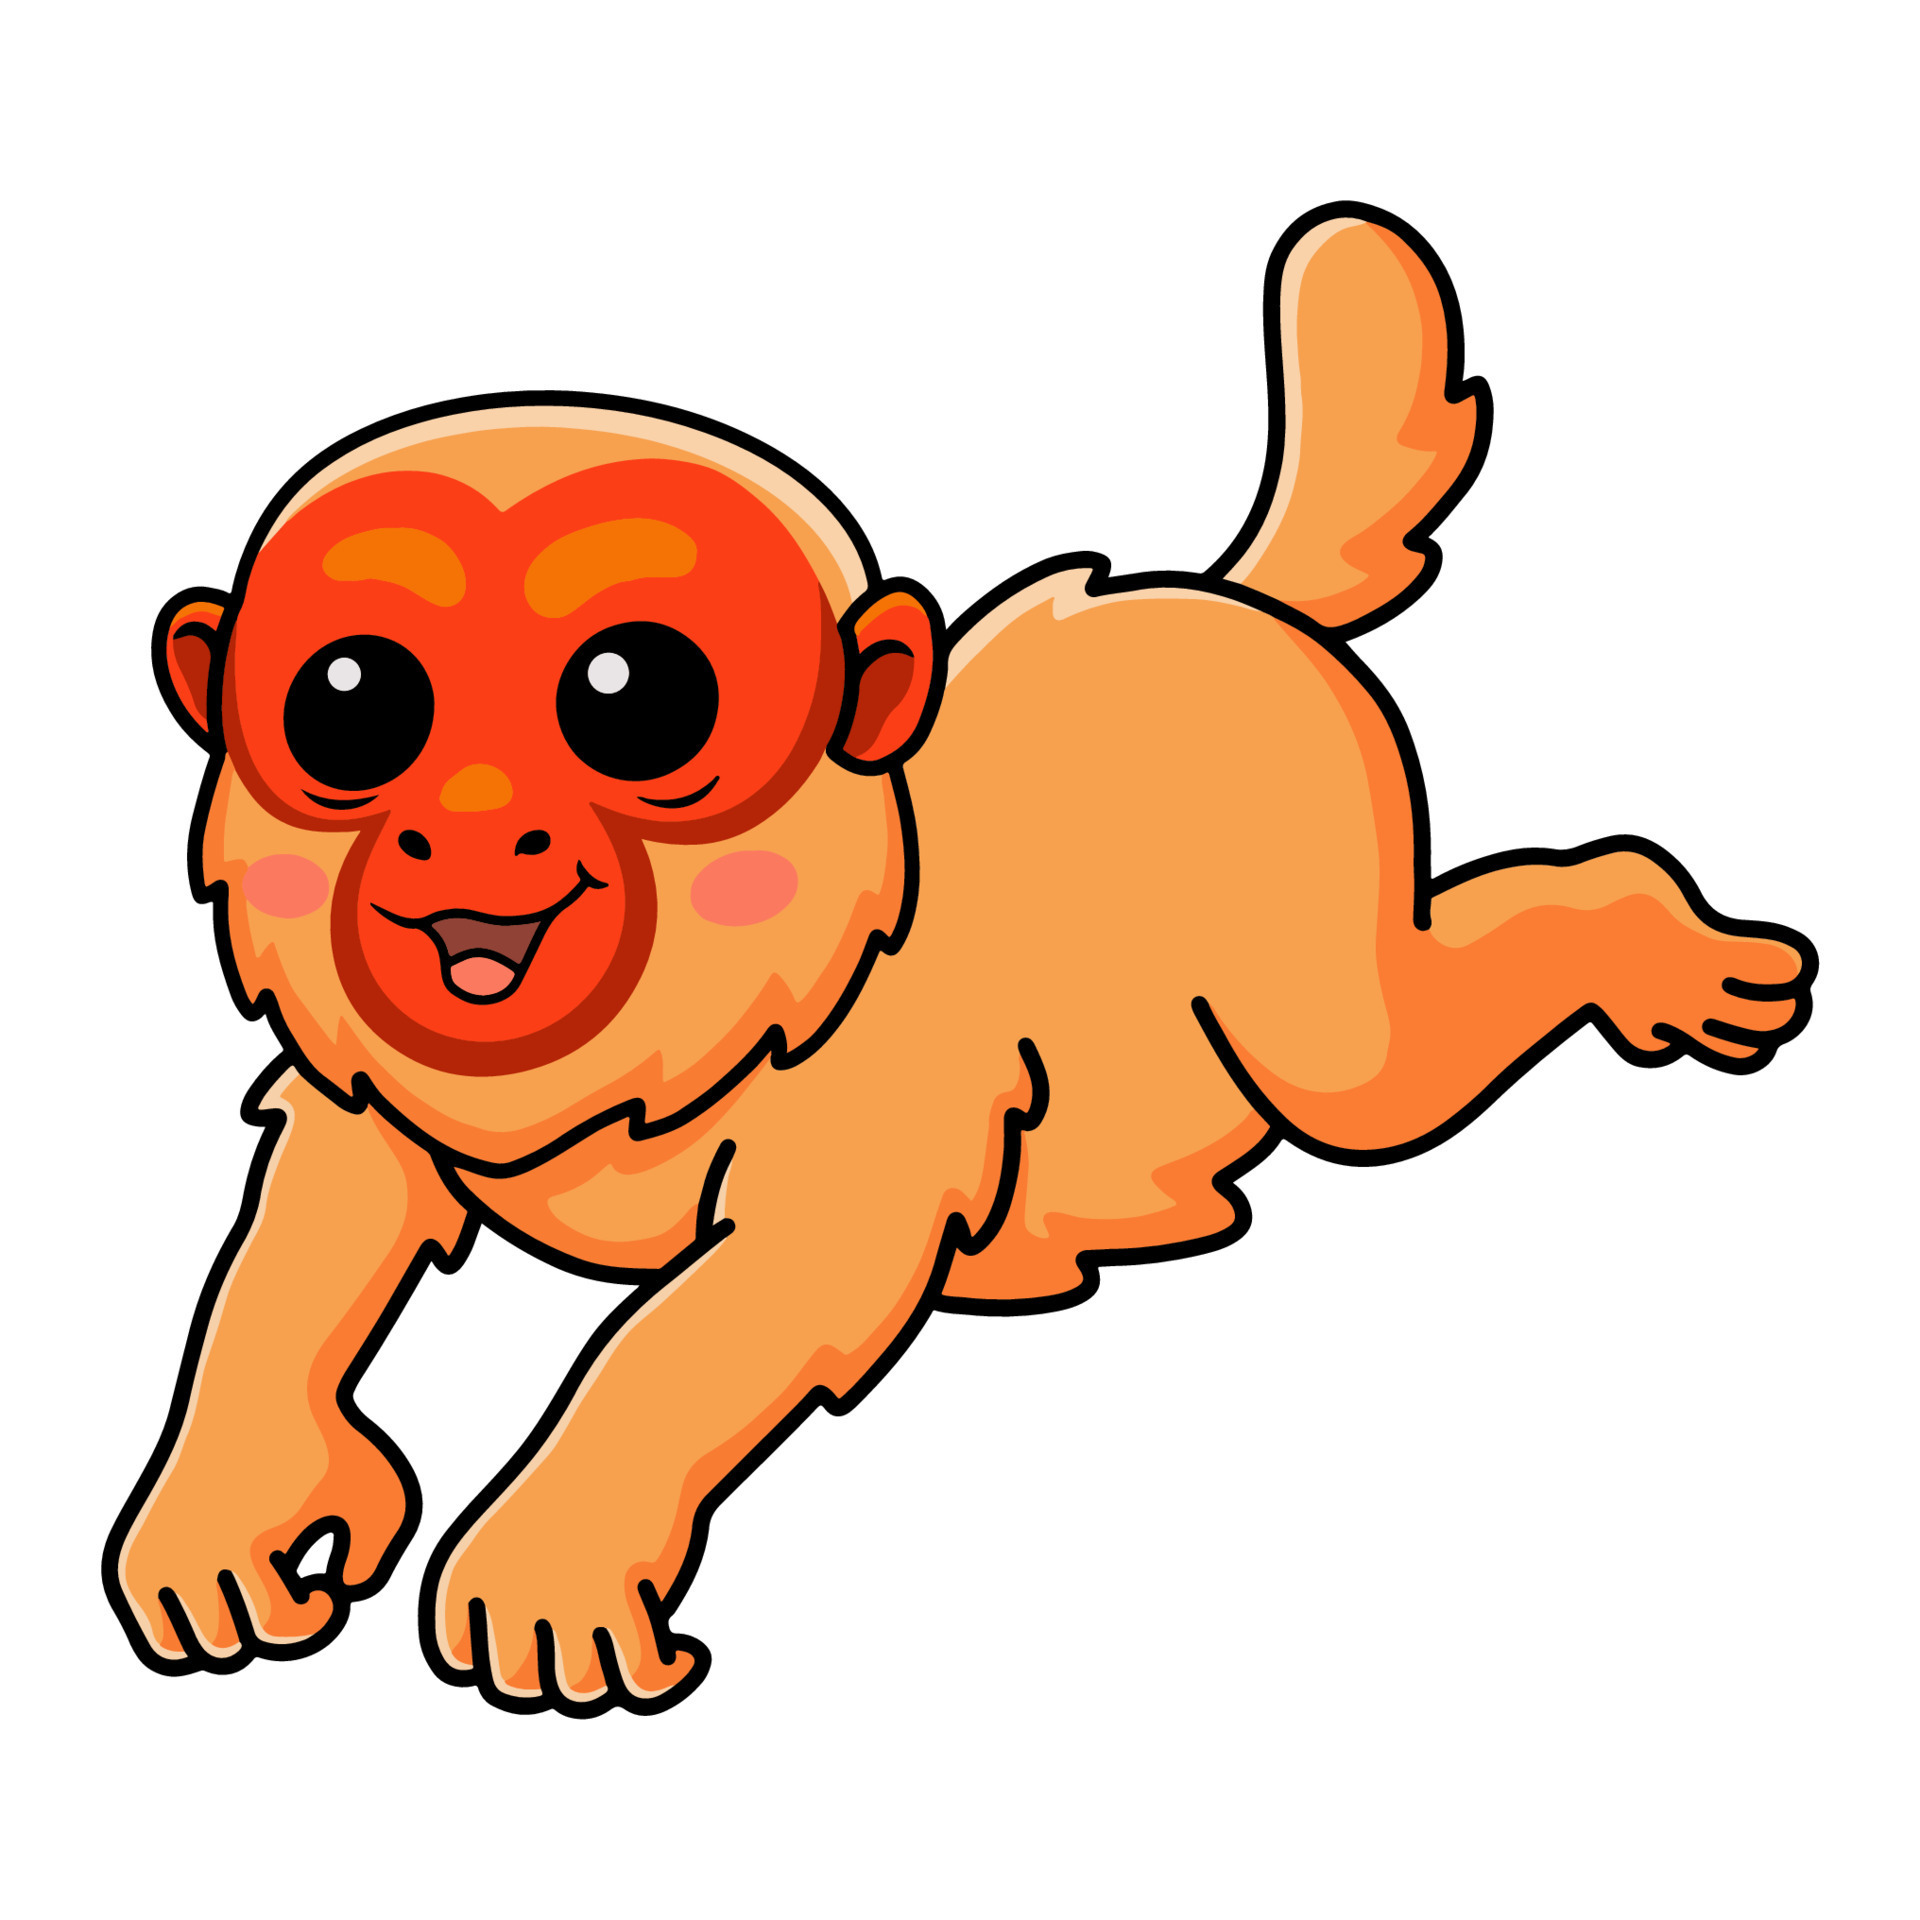 Macaco bonito em estilo simples de desenho animado